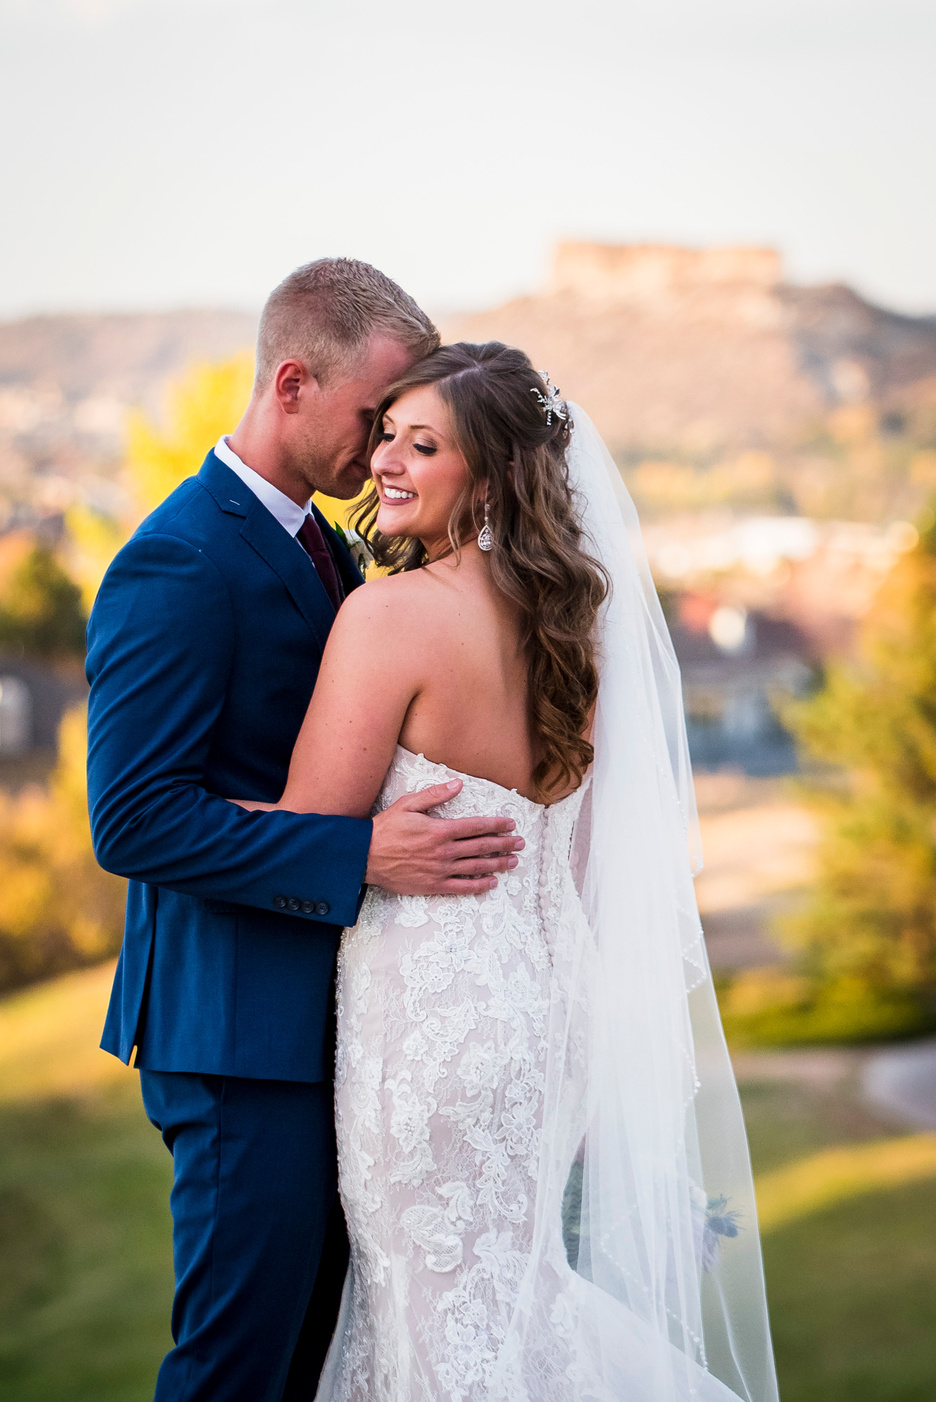 A groom hugs his bride as she faces toward the camera, captured by Denver wedding photographer, Casey Van Horn.